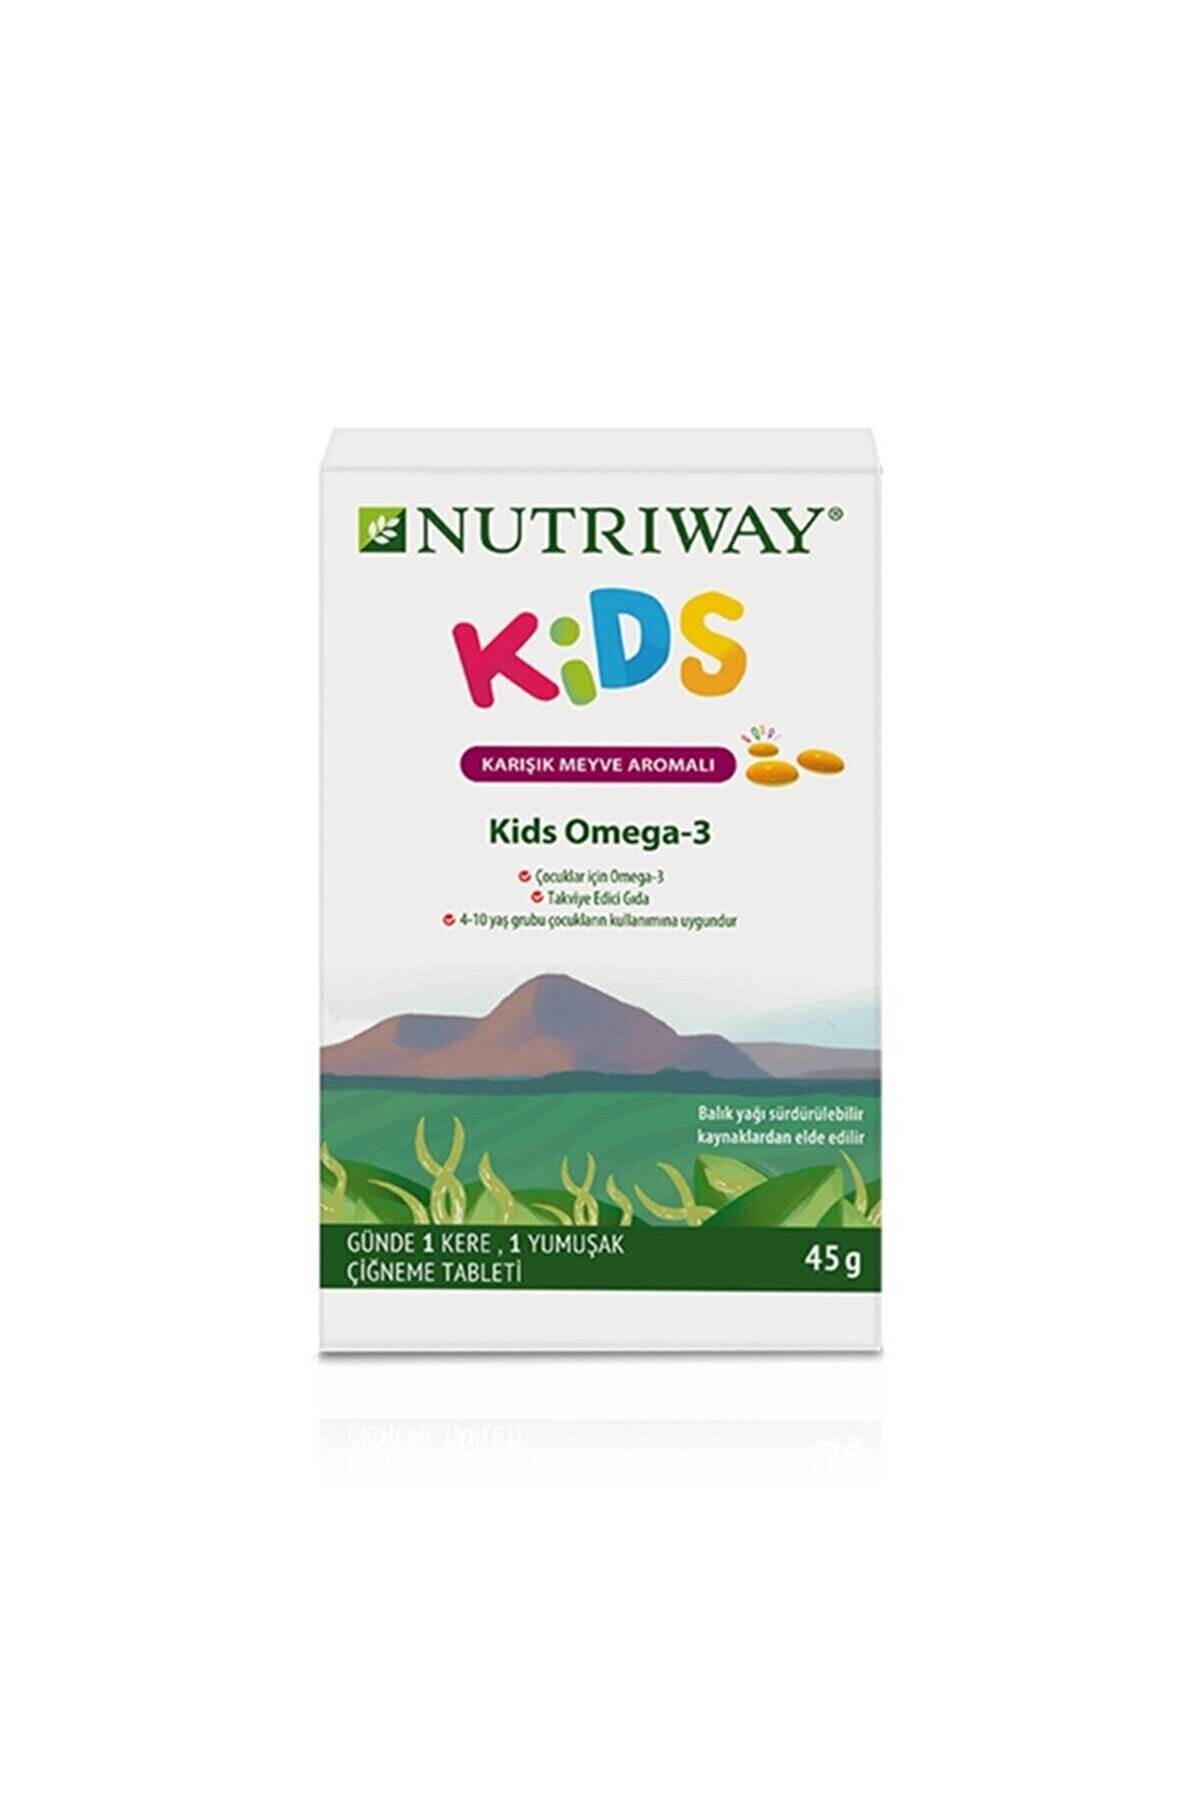 Amway Kids Omega -3 Nutrıway™ Her Birinde 15 Yumuşak Çiğneme Tableti Bulunan 2 Adet Alüminyum Ambalaj